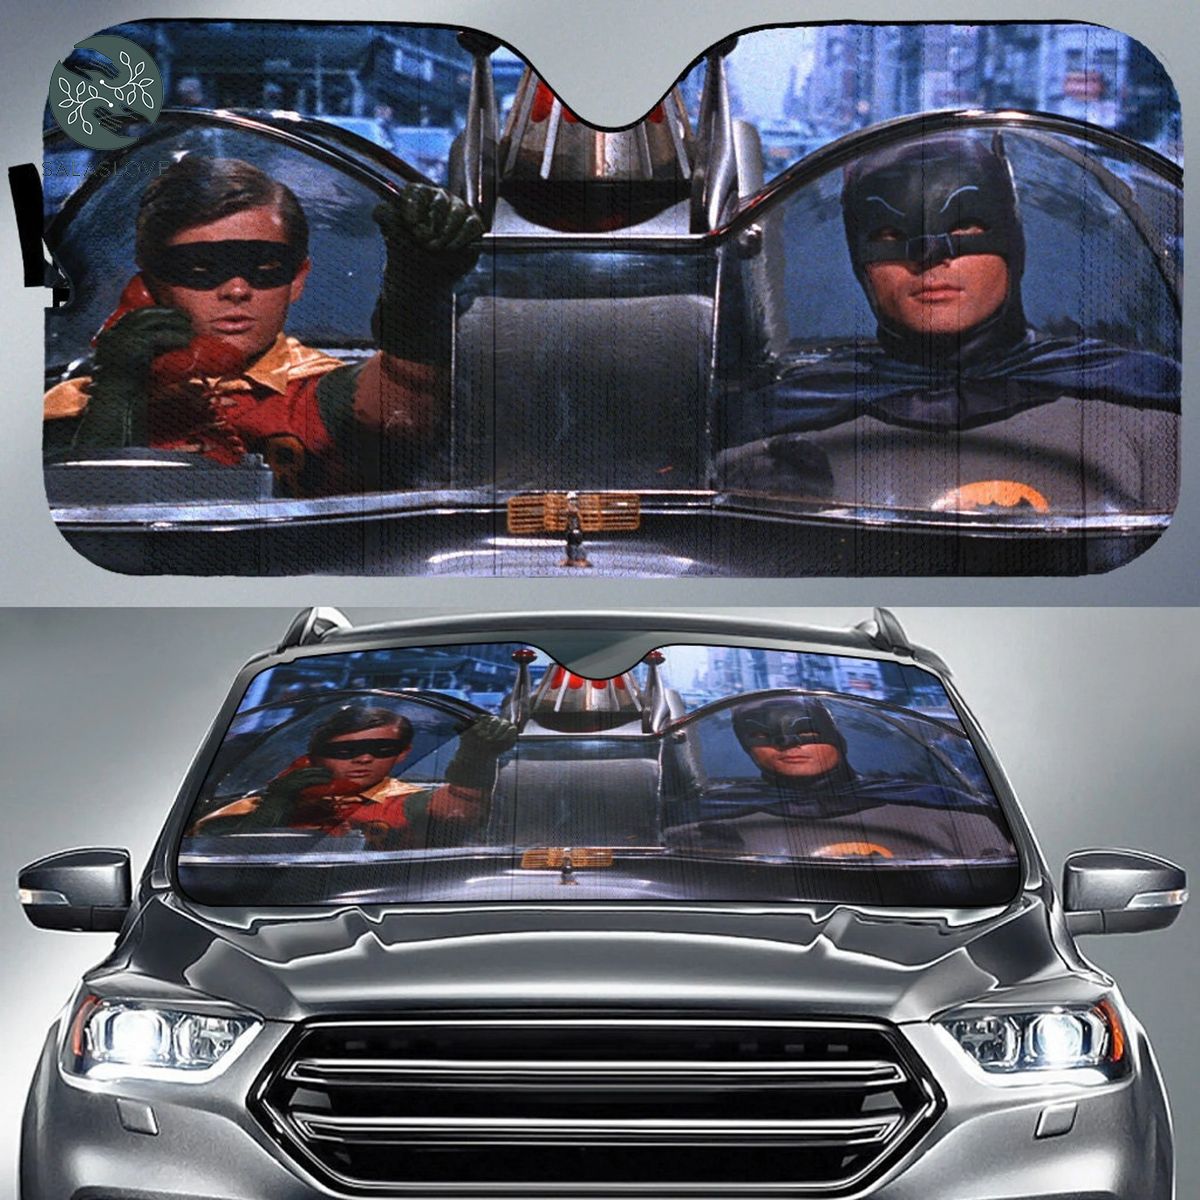 Batman and Robin Car Auto Sun Shade